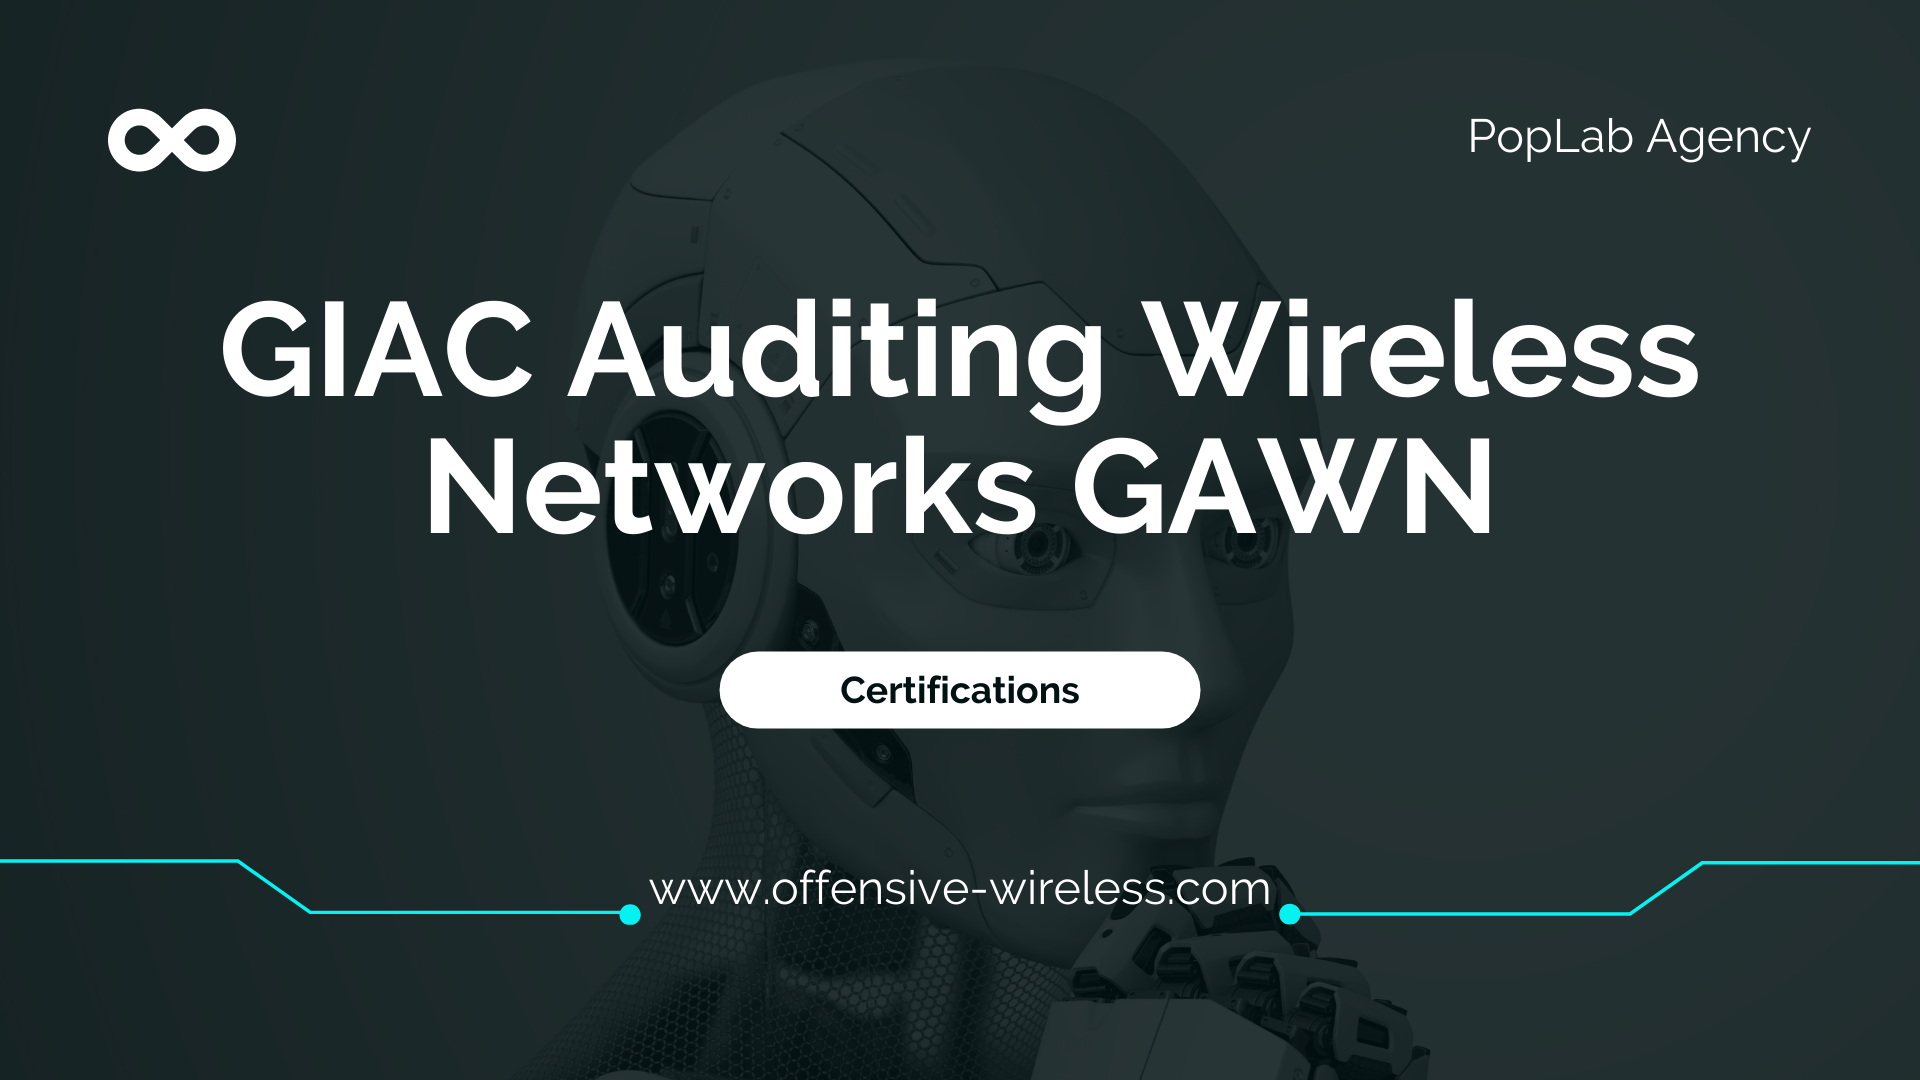 GIAC Auditing Wireless Networks GAWN